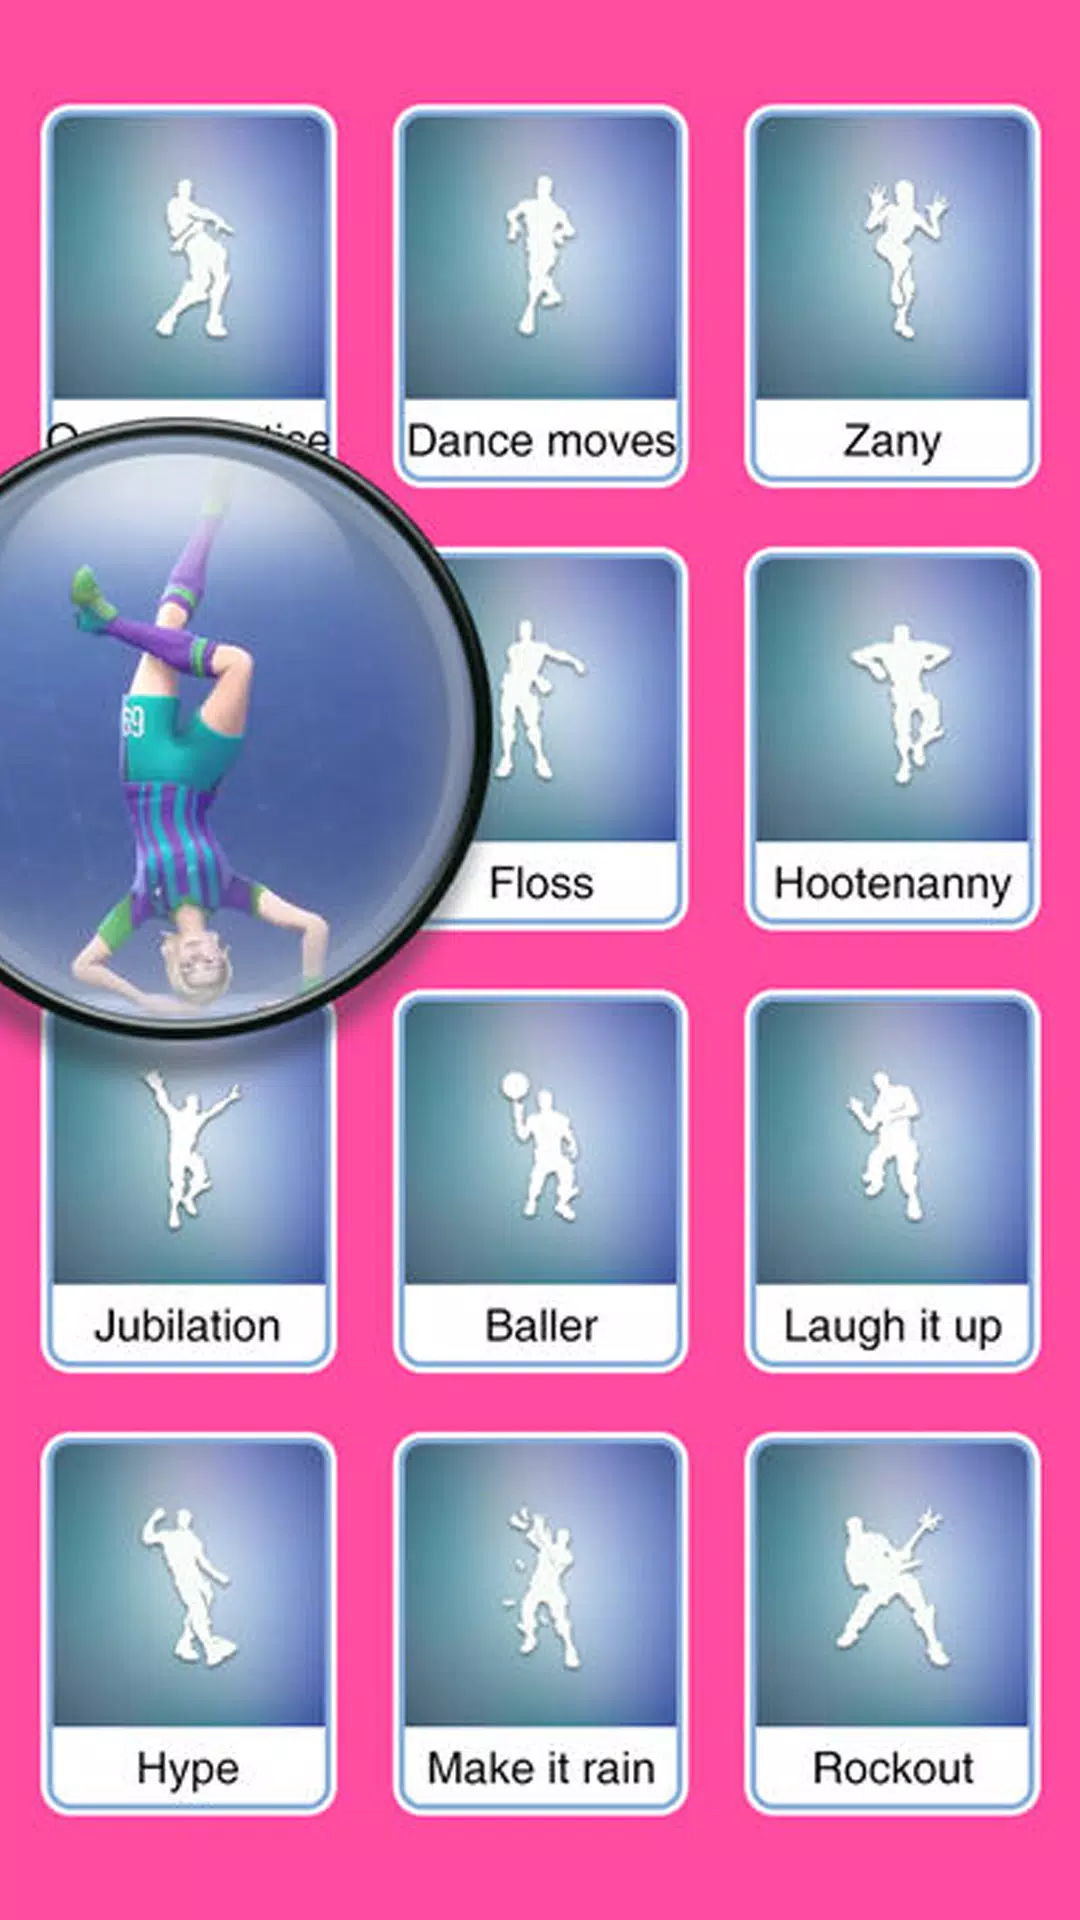 رقصات فورت نايت ( نسخة جديدة ) APK for Android Download